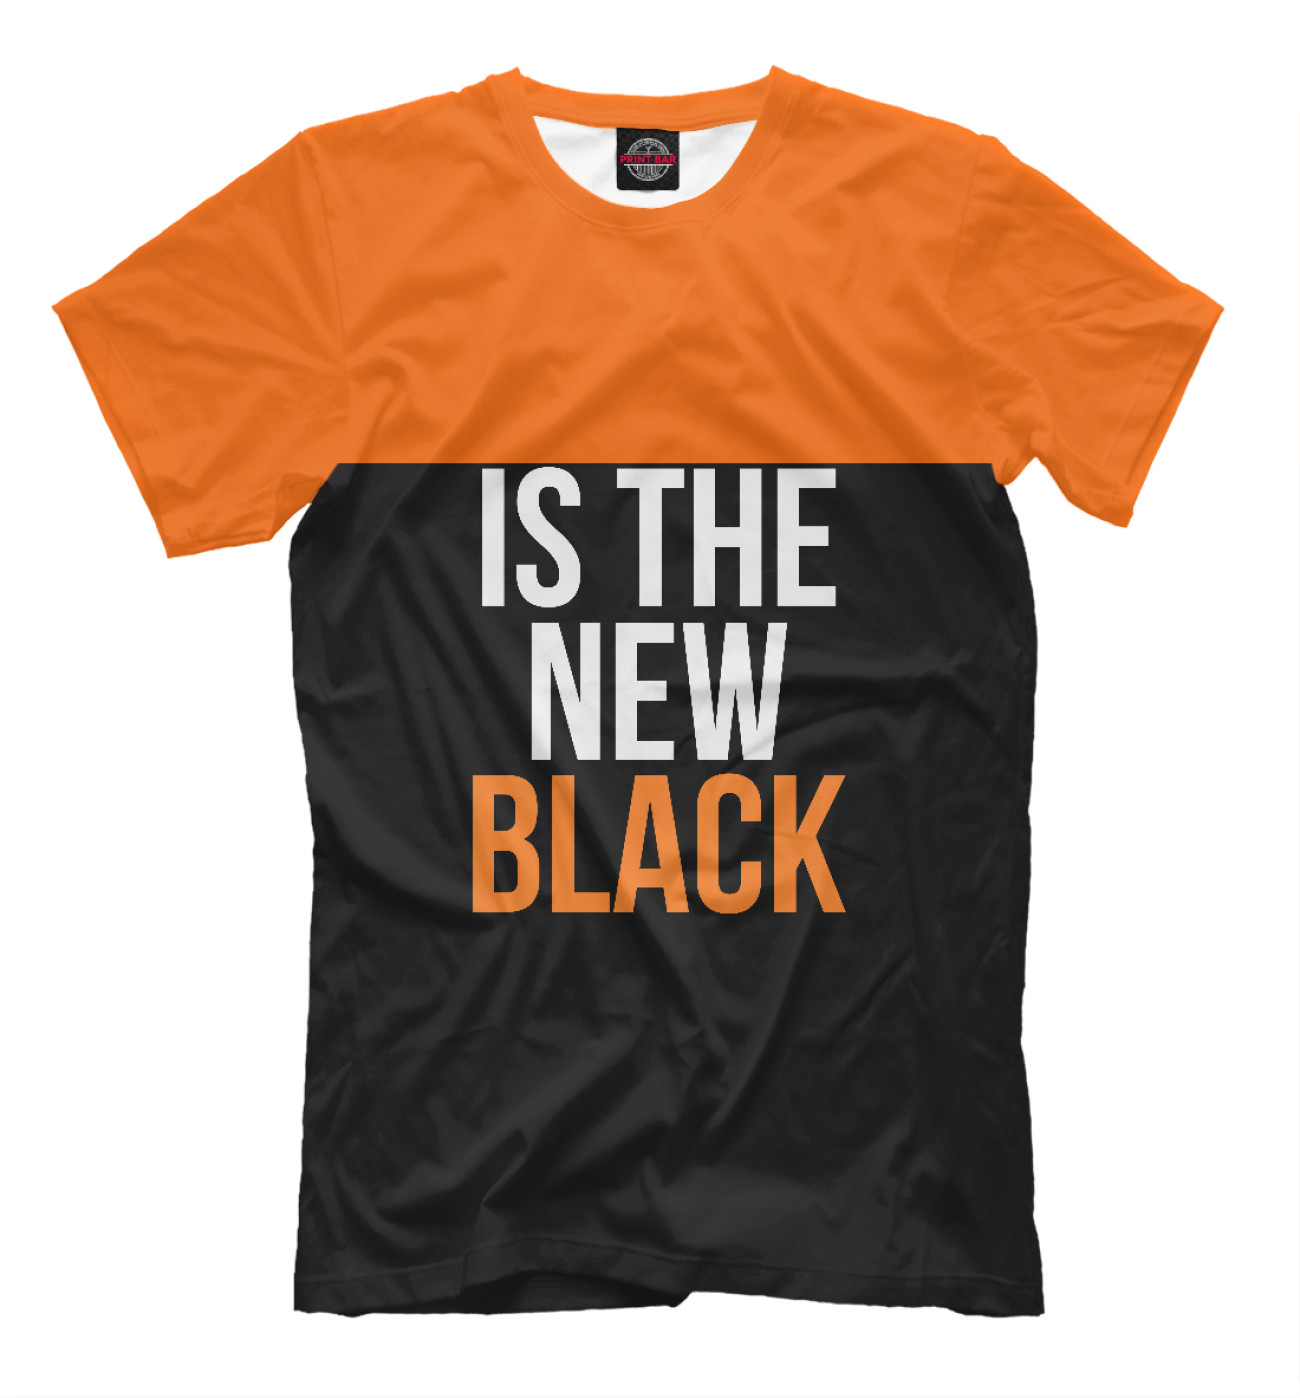 Мужская Футболка Orange Is the New Black, артикул: SOT-379562-fut-2